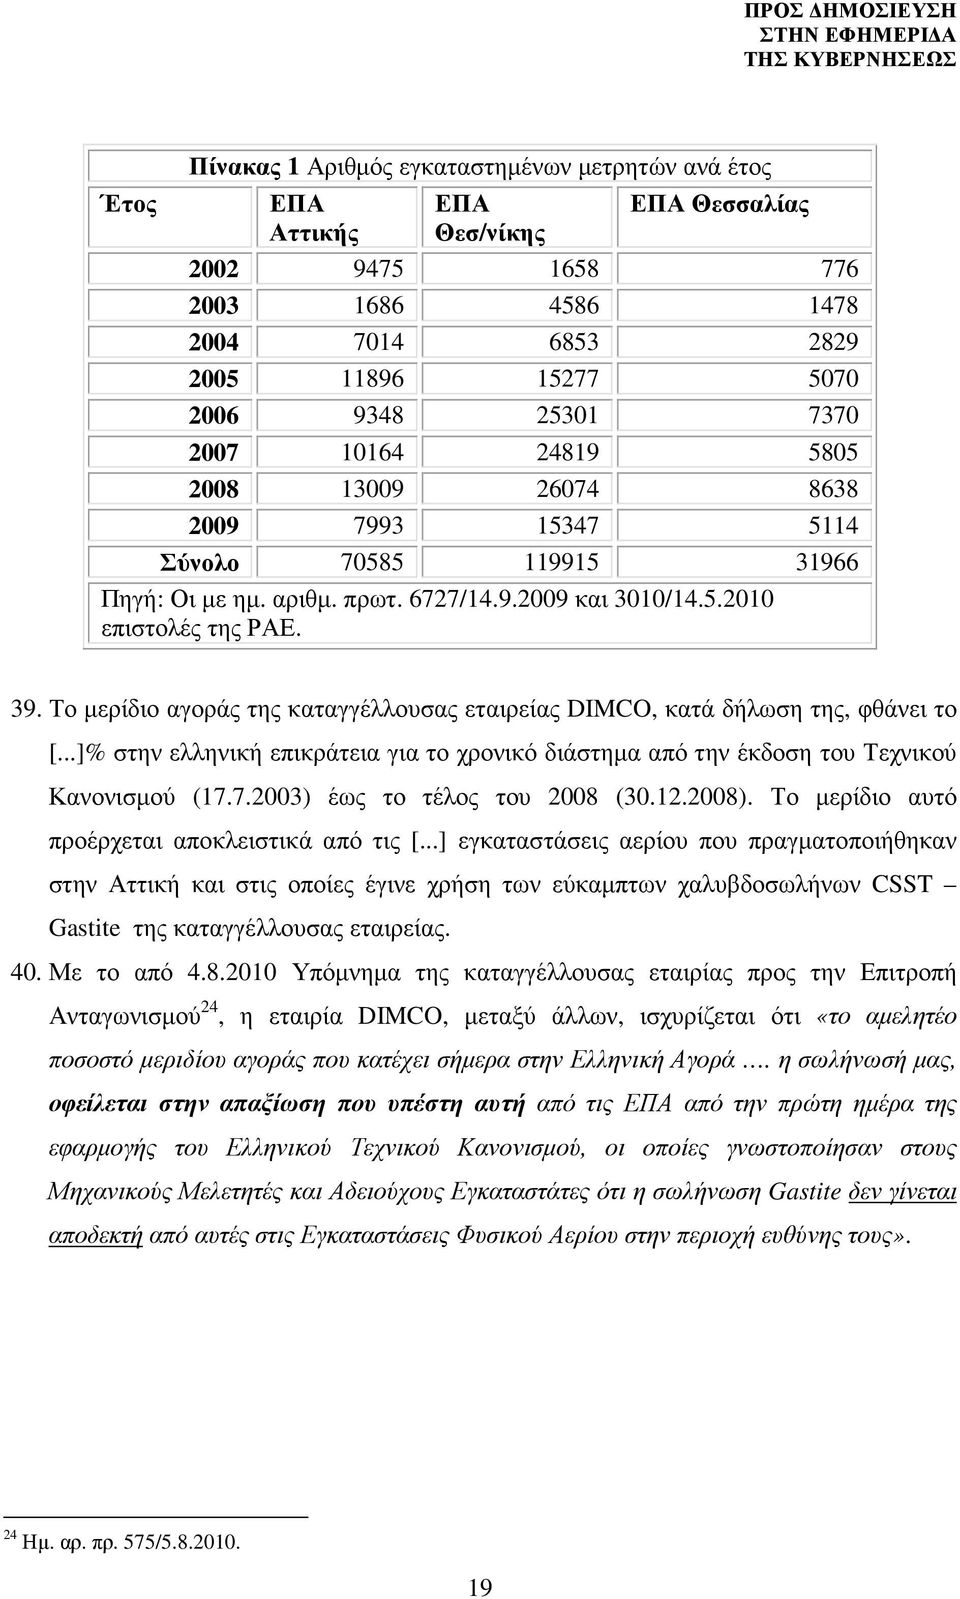 Το µερίδιο αγοράς της καταγγέλλουσας εταιρείας DIMCO, κατά δήλωση της, φθάνει το [...]% στην ελληνική επικράτεια για το χρονικό διάστηµα από την έκδοση του Τεχνικού Κανονισµού (17.